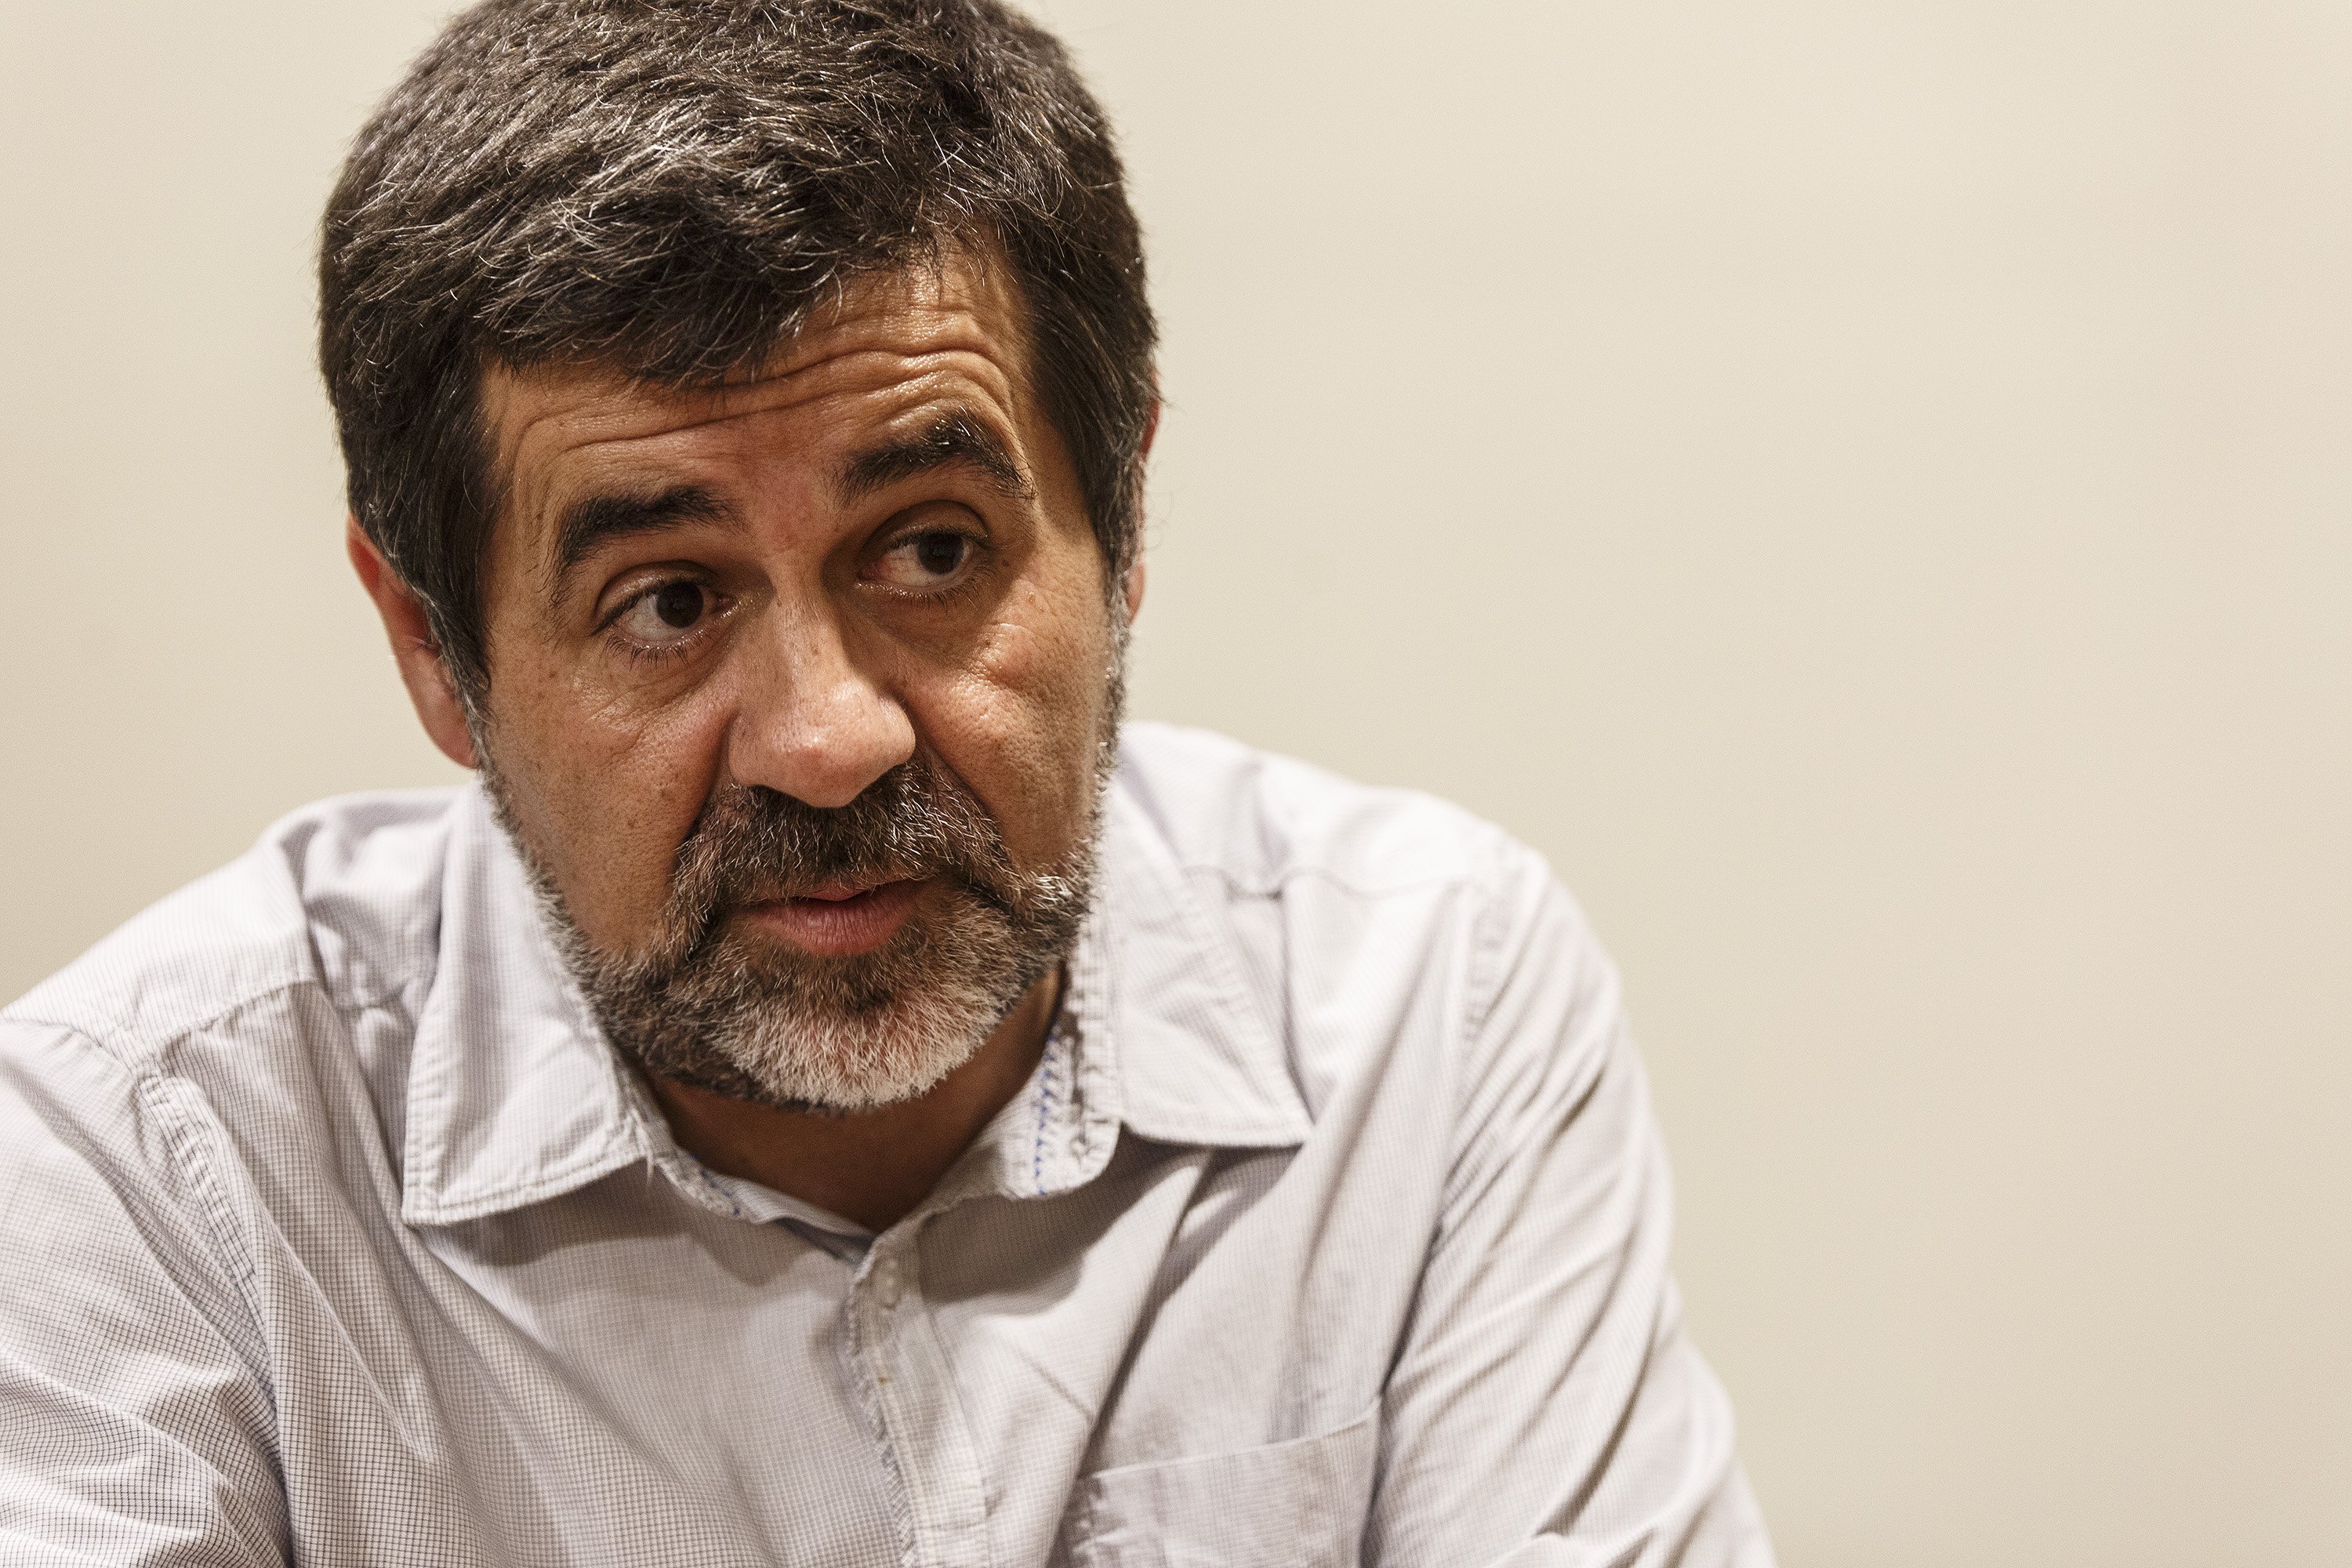 La defensa de Jordi Sànchez vuelve a pedir su libertad provisional